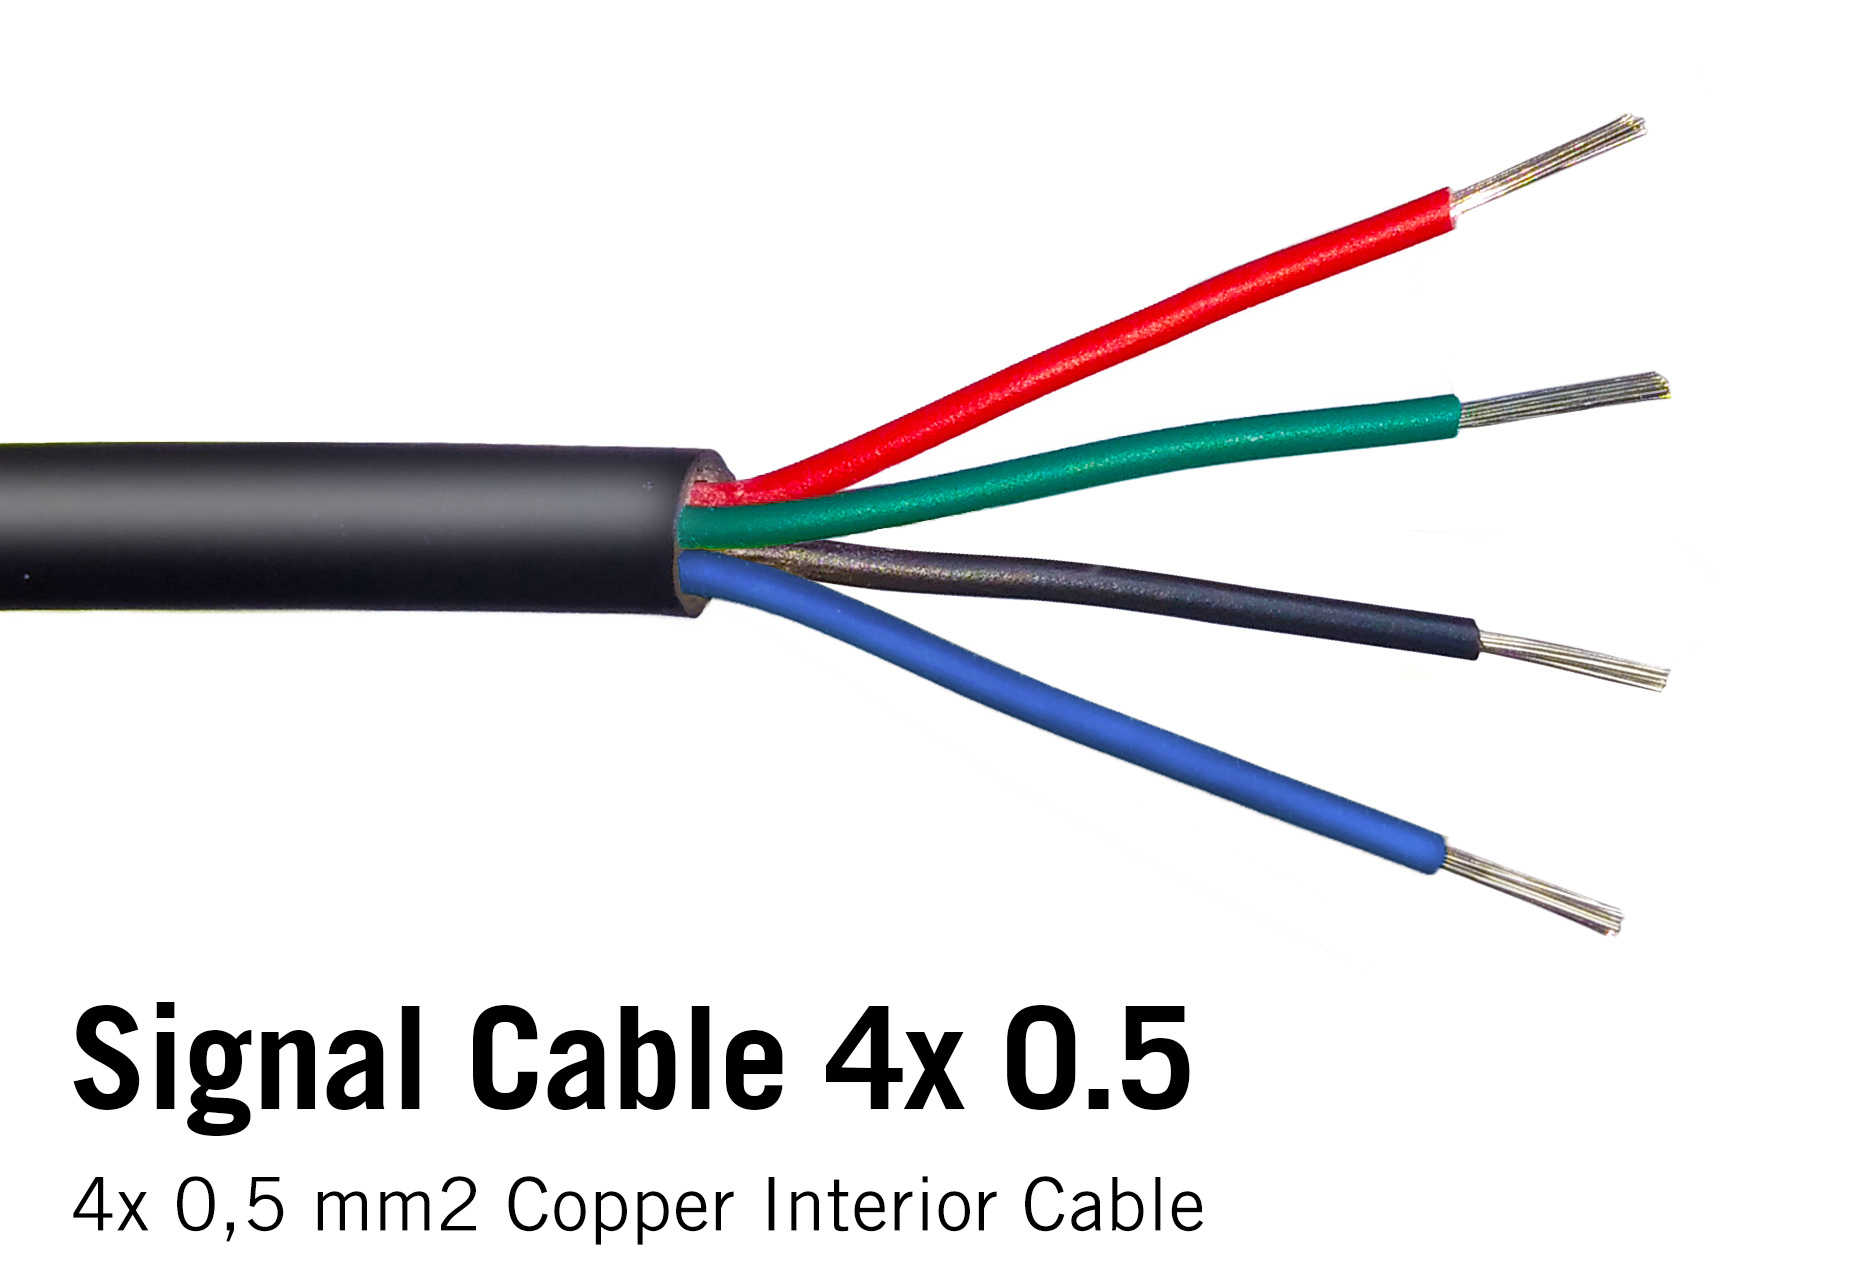 Ronde kabel 4x 0.5mm2  rood, groen, blauw, zwart